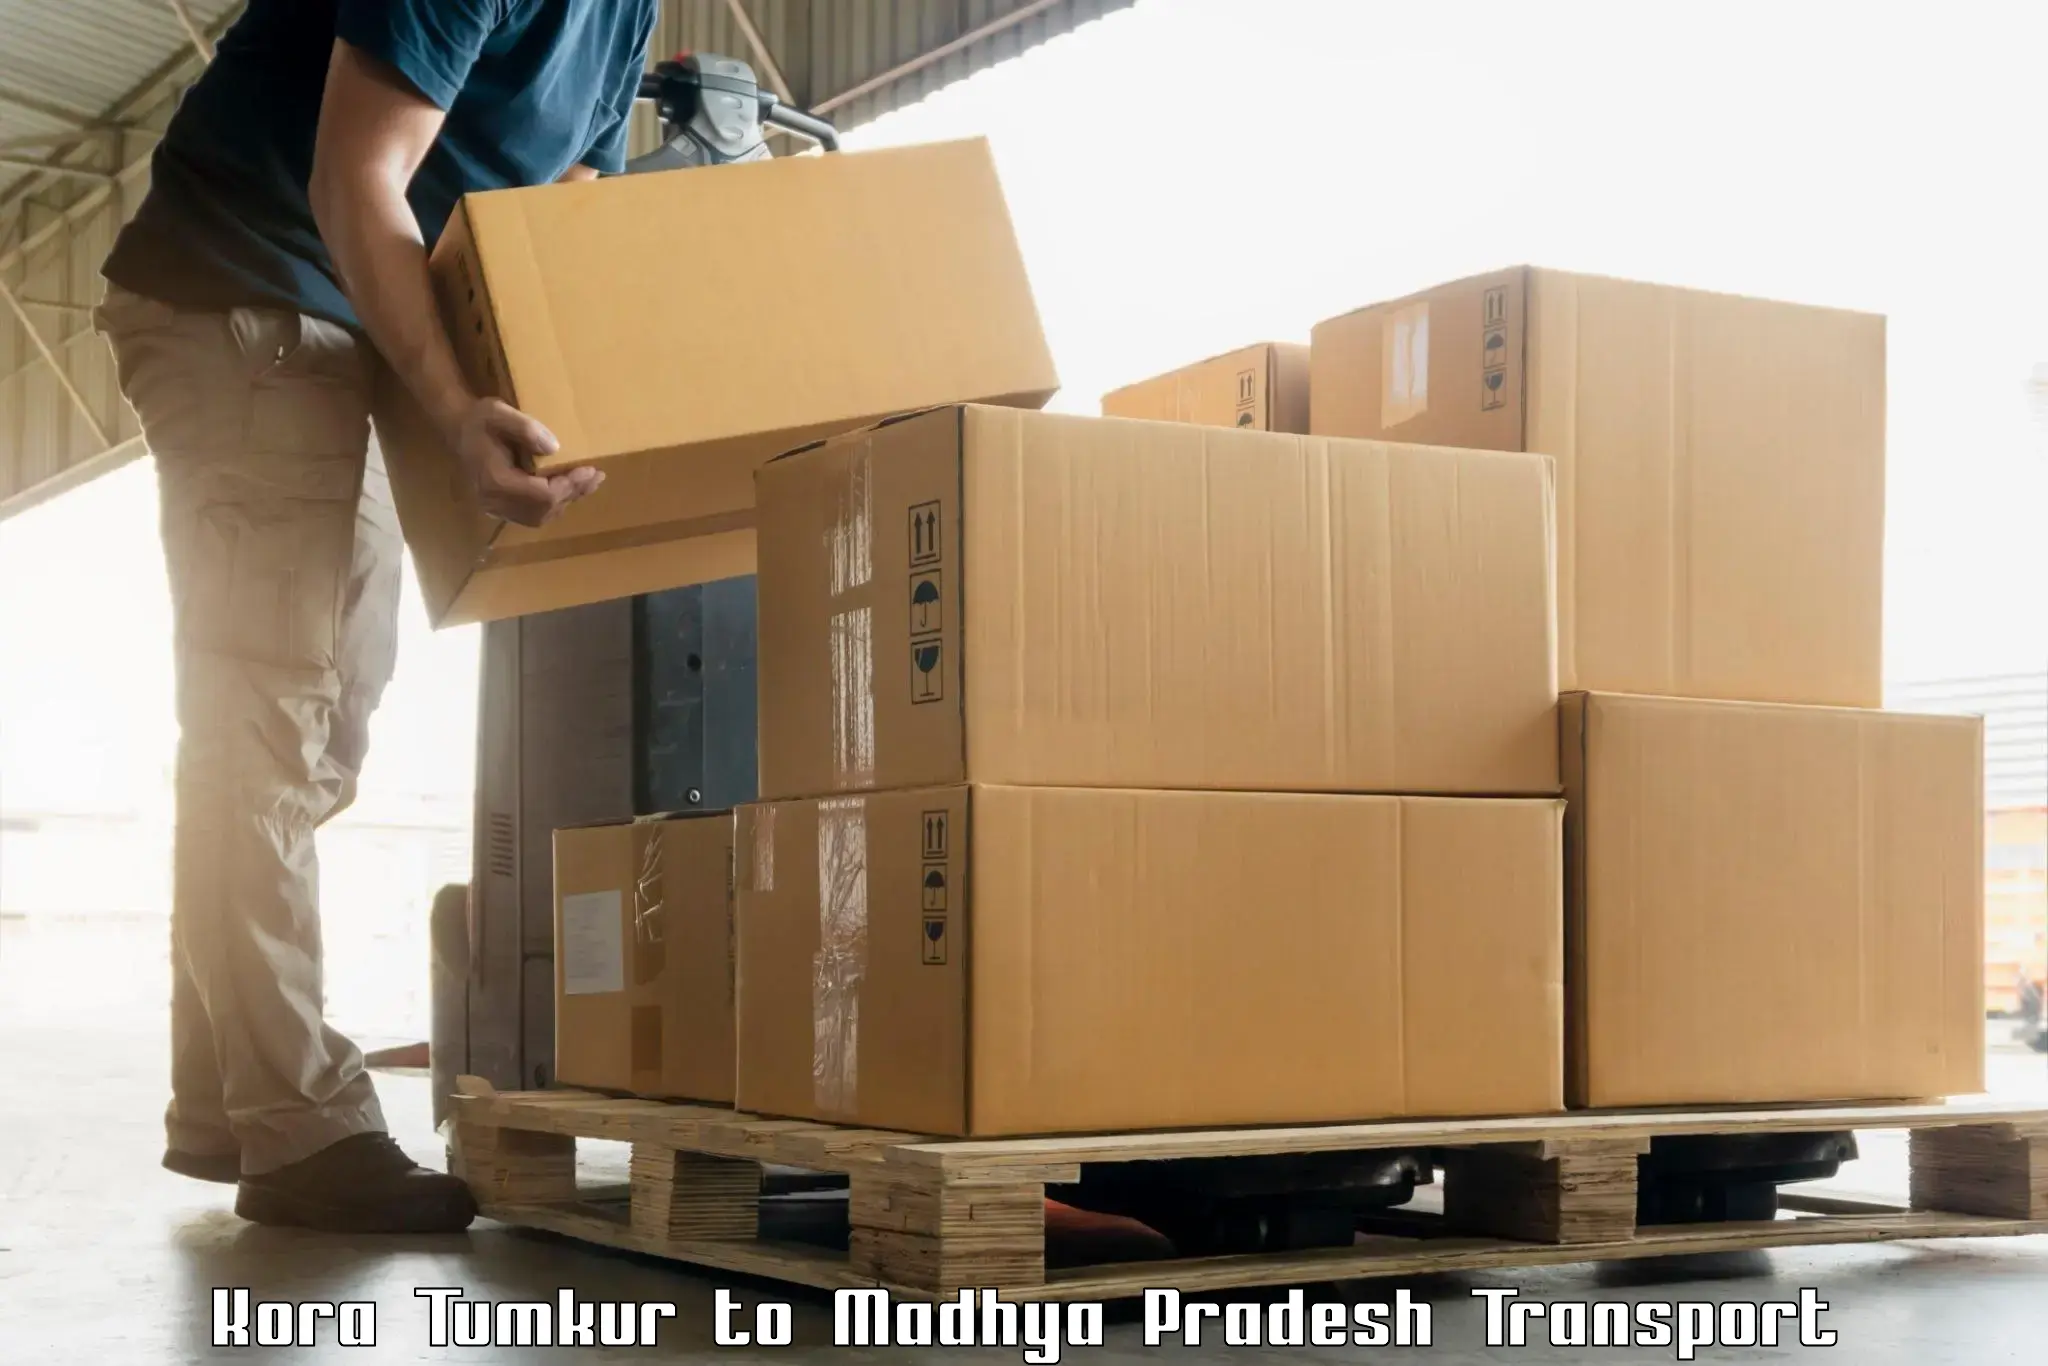 India truck logistics services Kora Tumkur to Katangi